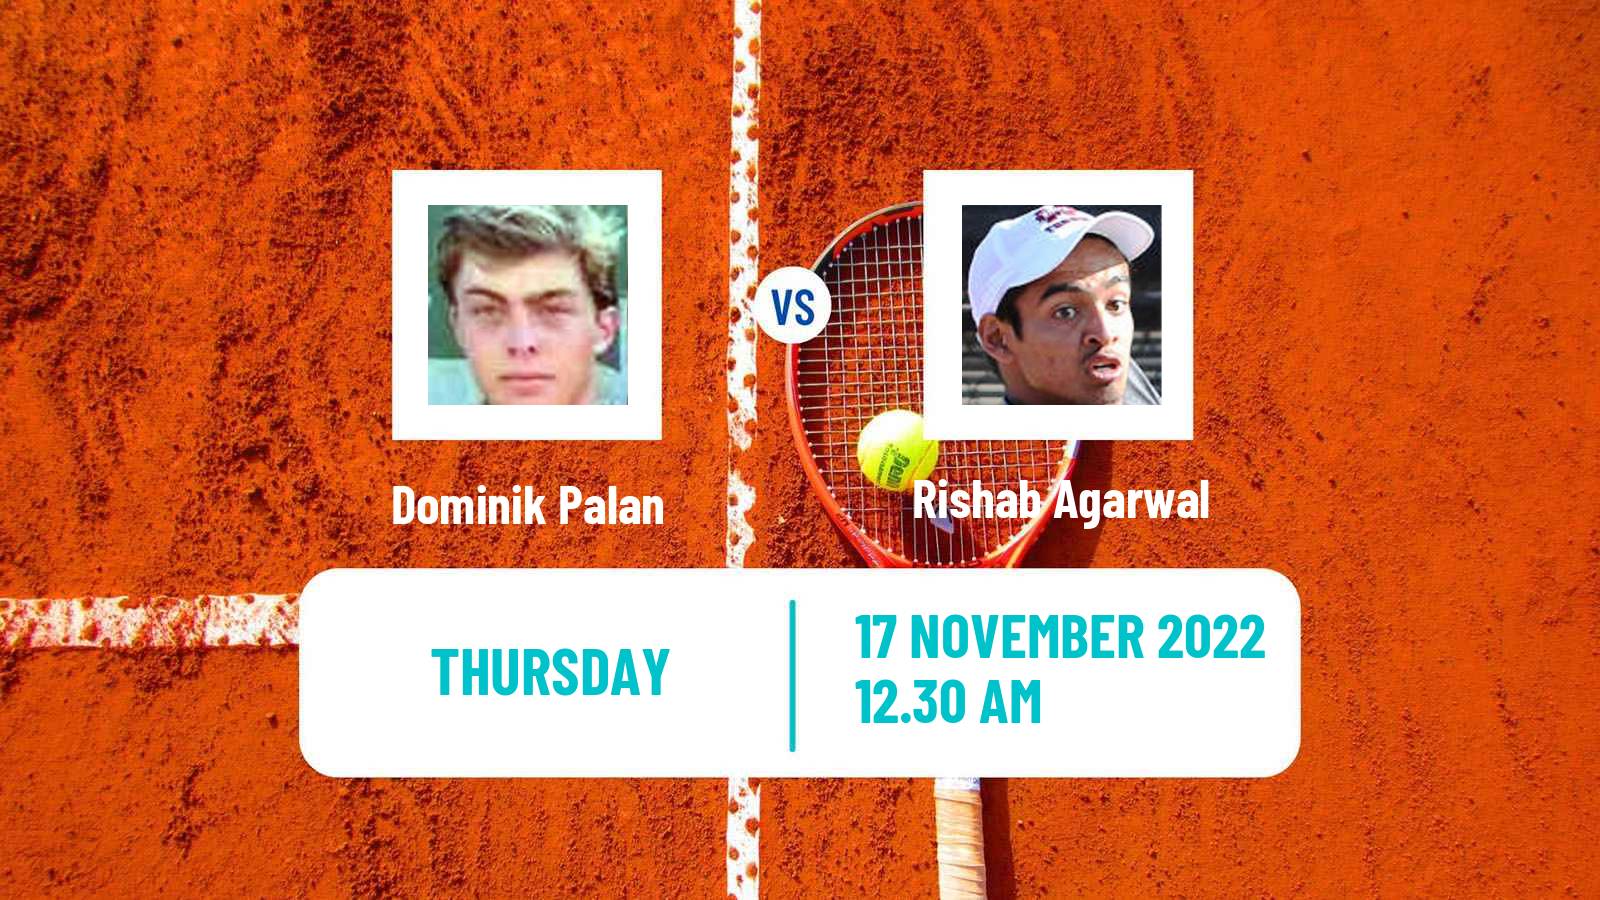 Tennis ITF Tournaments Dominik Palan - Rishab Agarwal